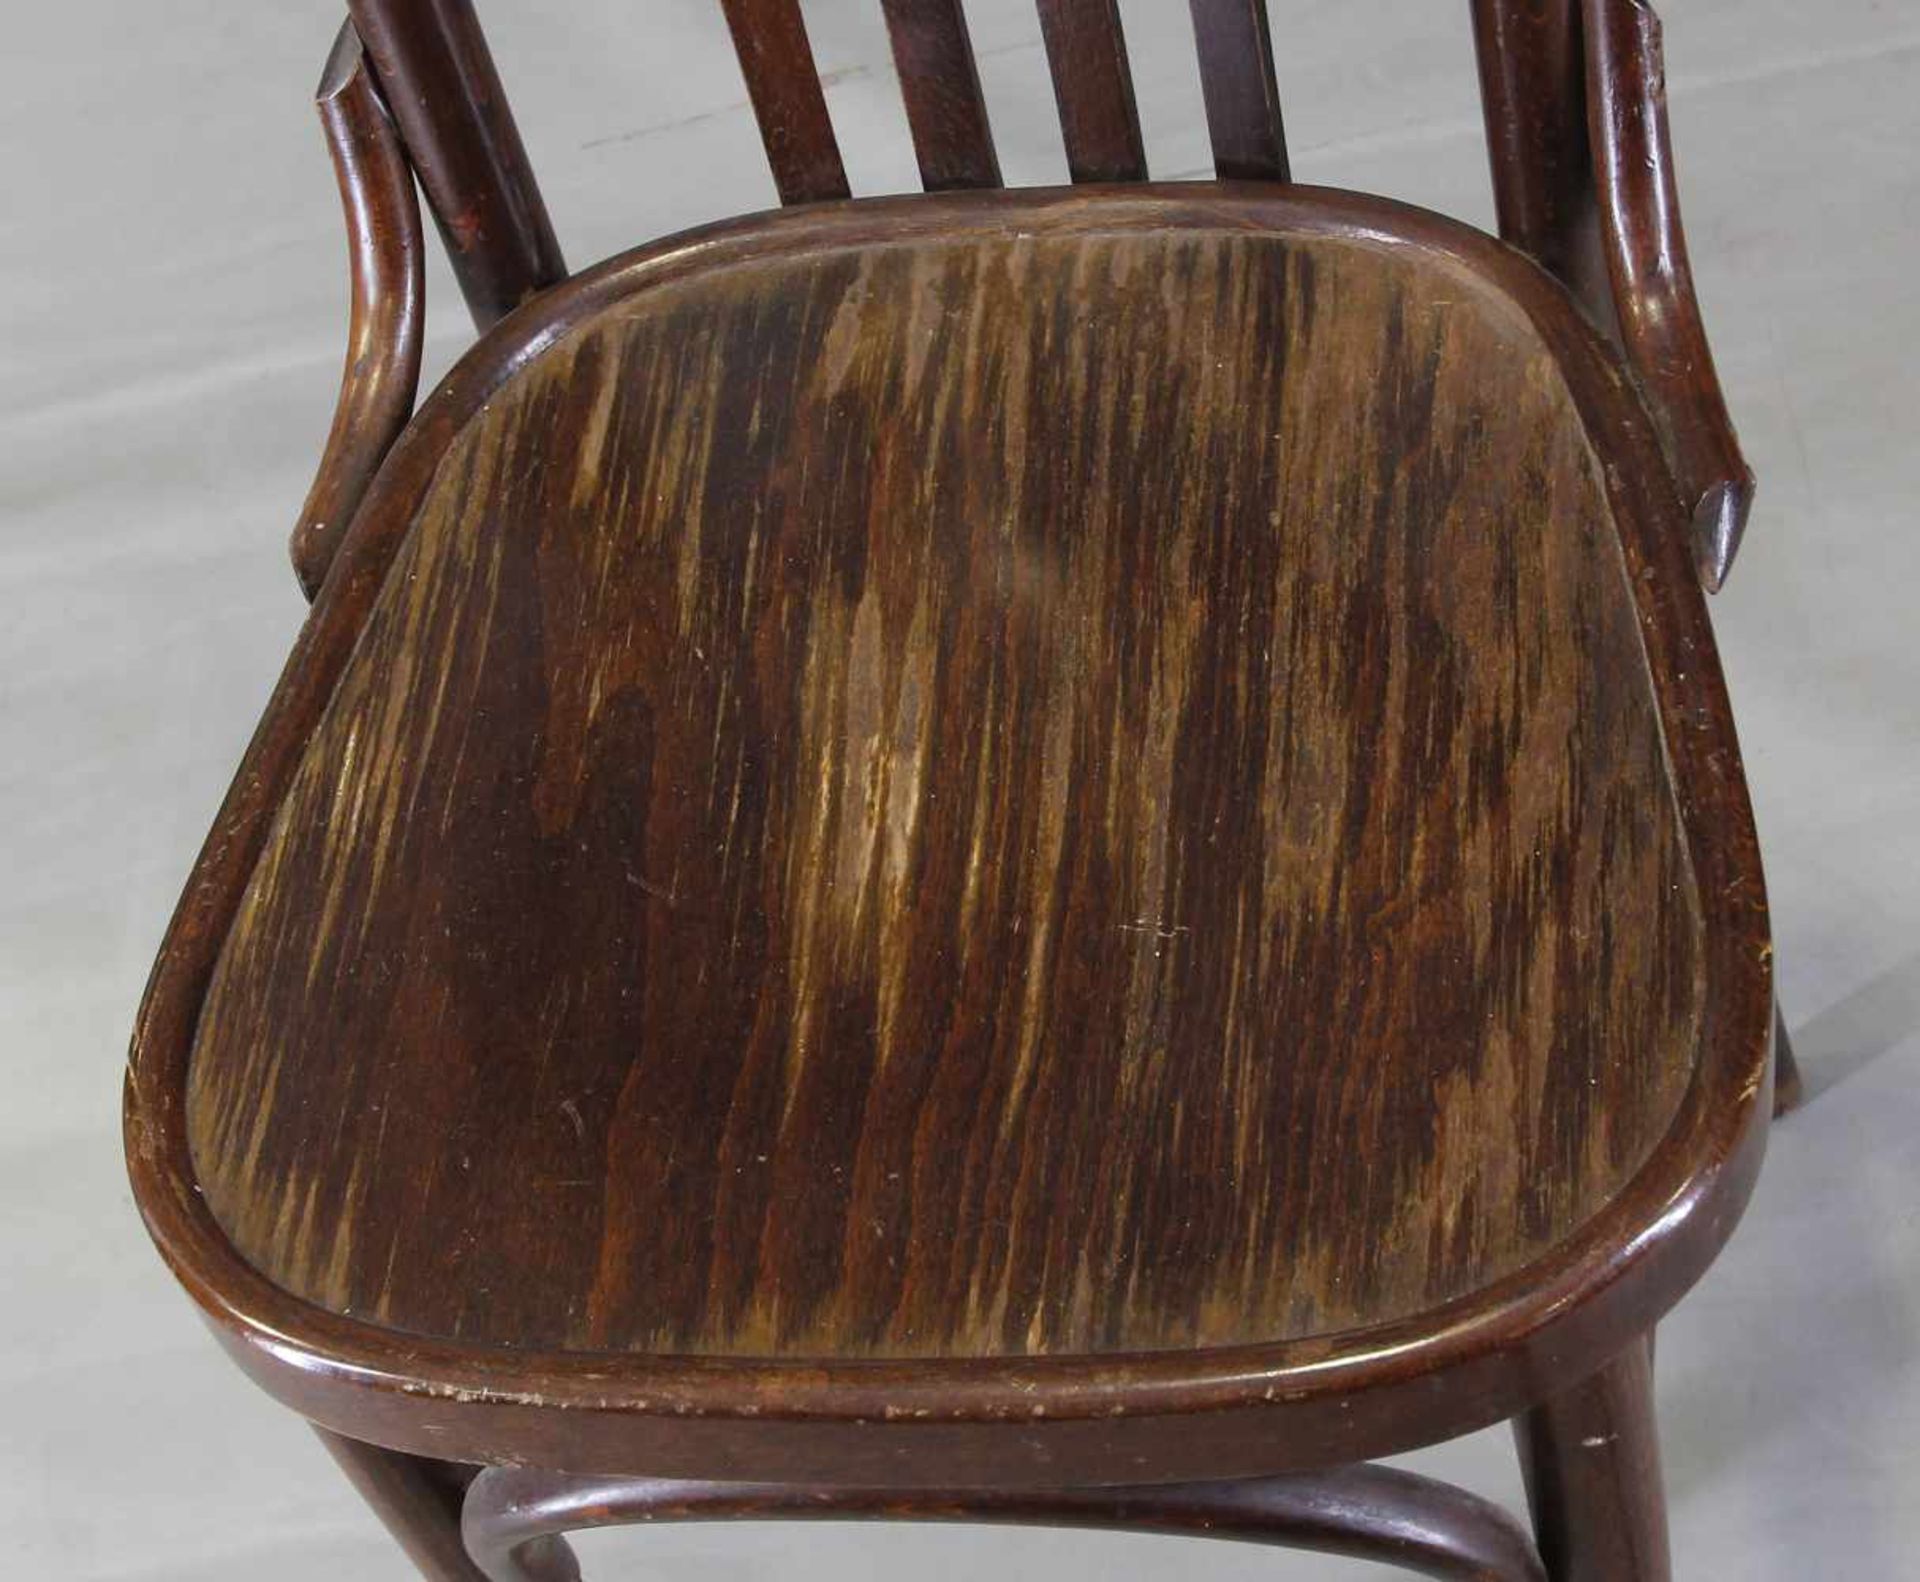 Stuhl Bugholz: braun lackiertes Bug- und Sperrholz, Sitzfläche mit Farbabplatzern, stabil, an der - Bild 2 aus 3